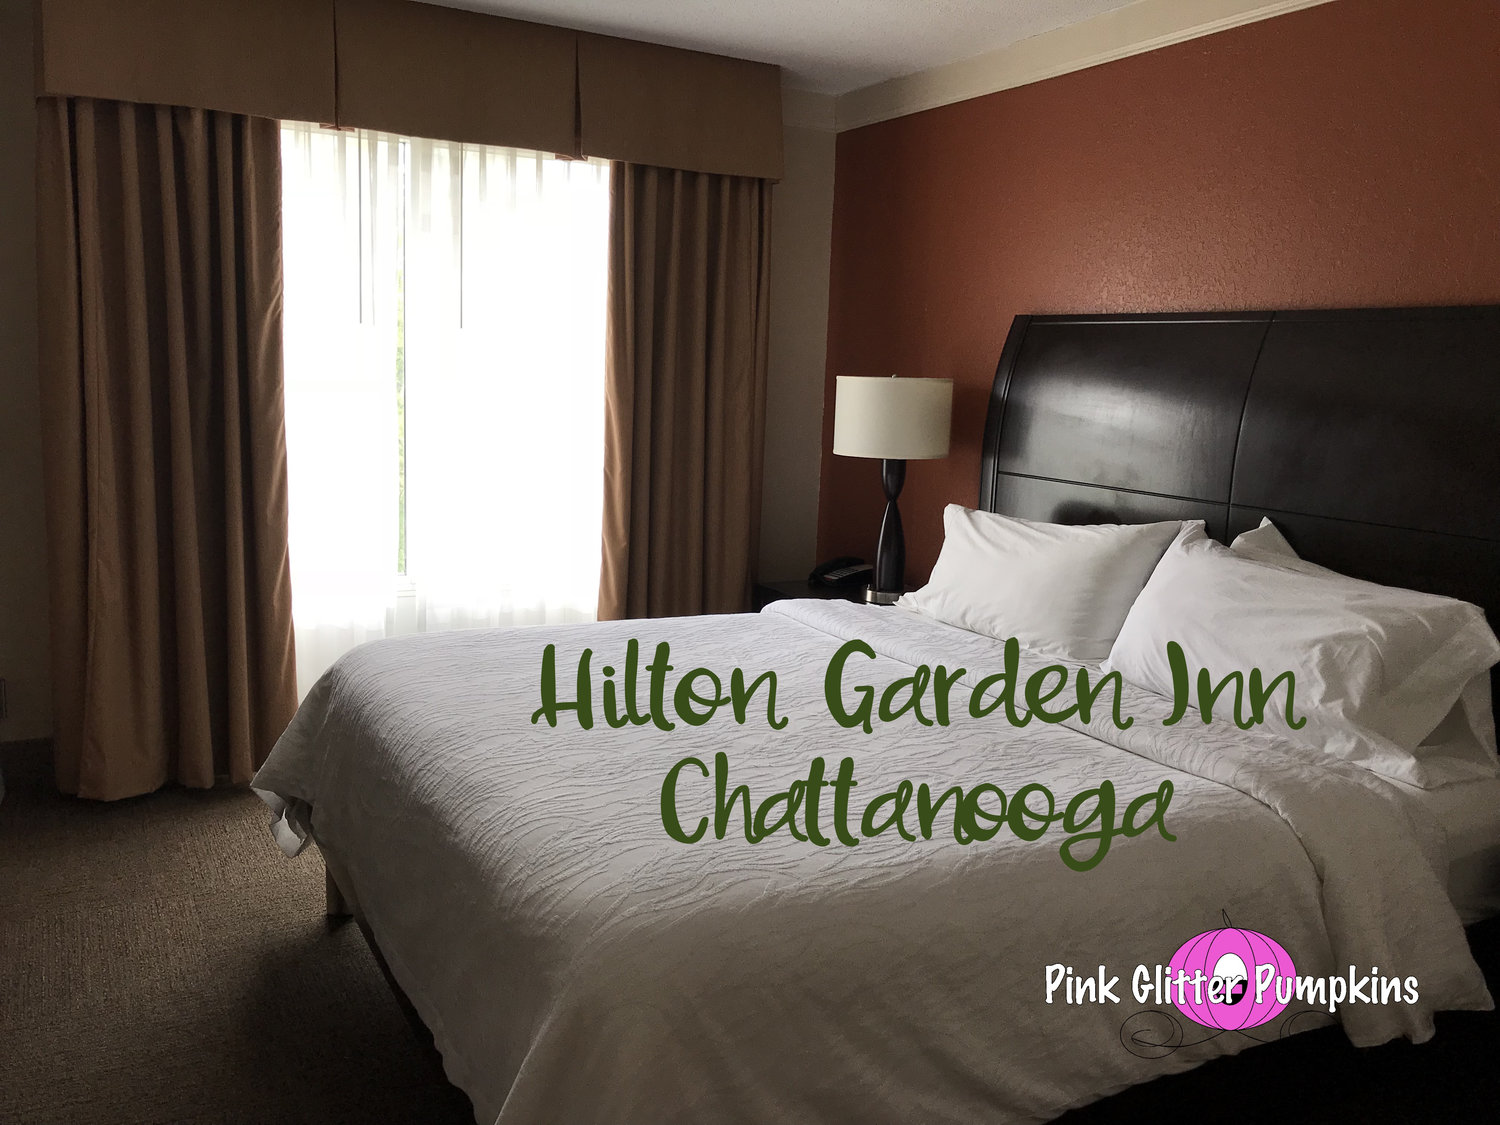 Hilton Garden Inn Chattanooga Pink Glitter Pumpkins